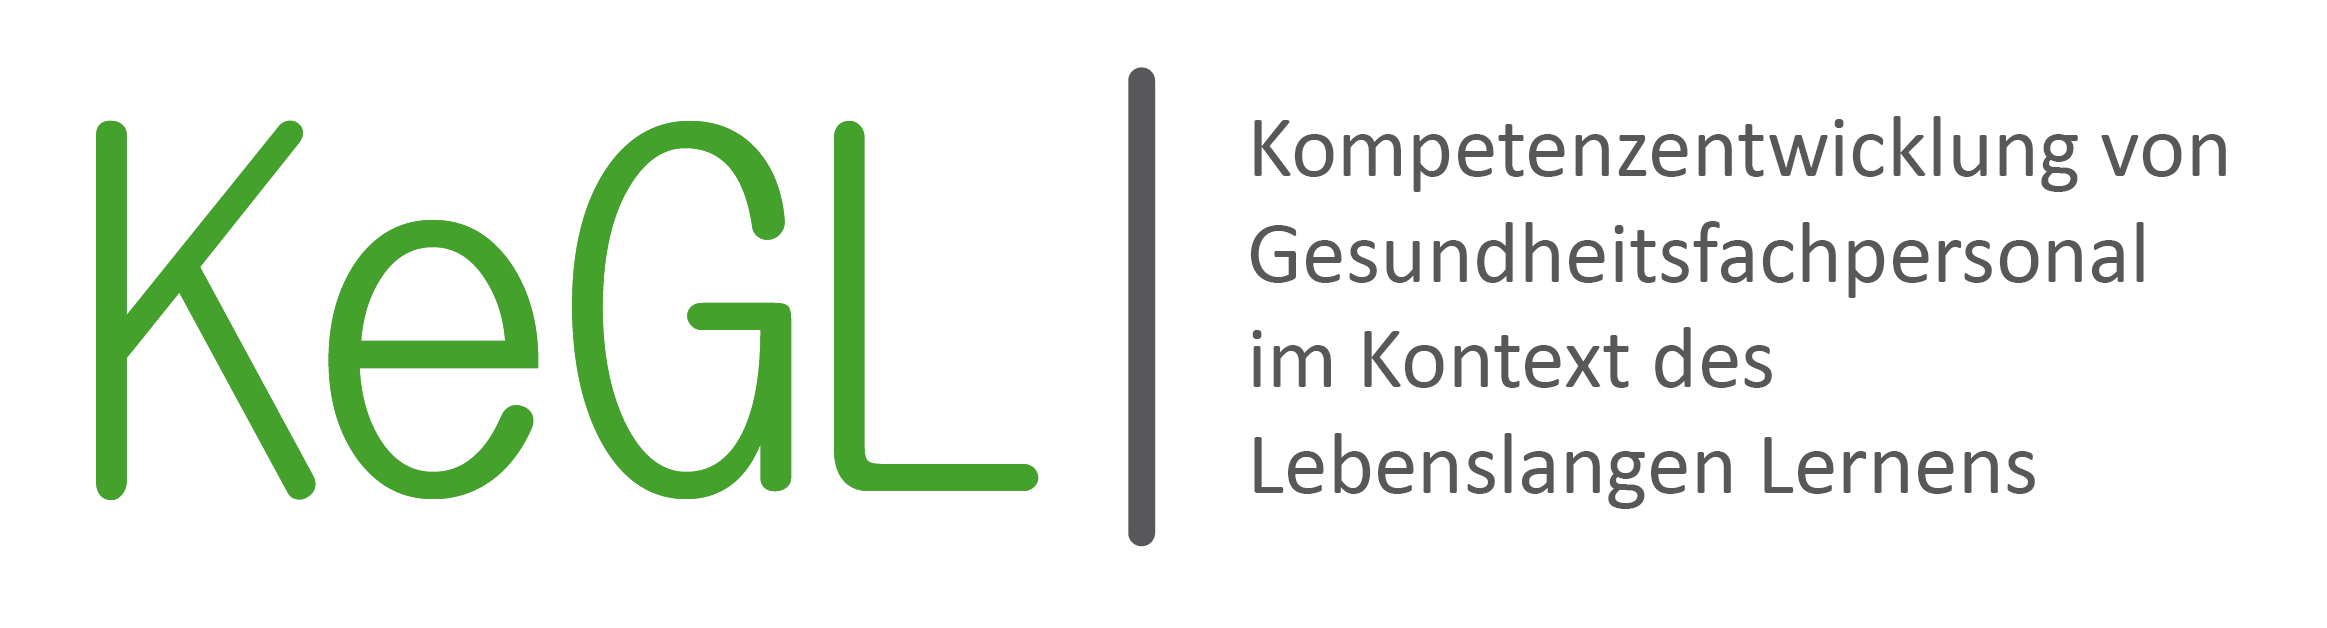 kegl_logo_schrift